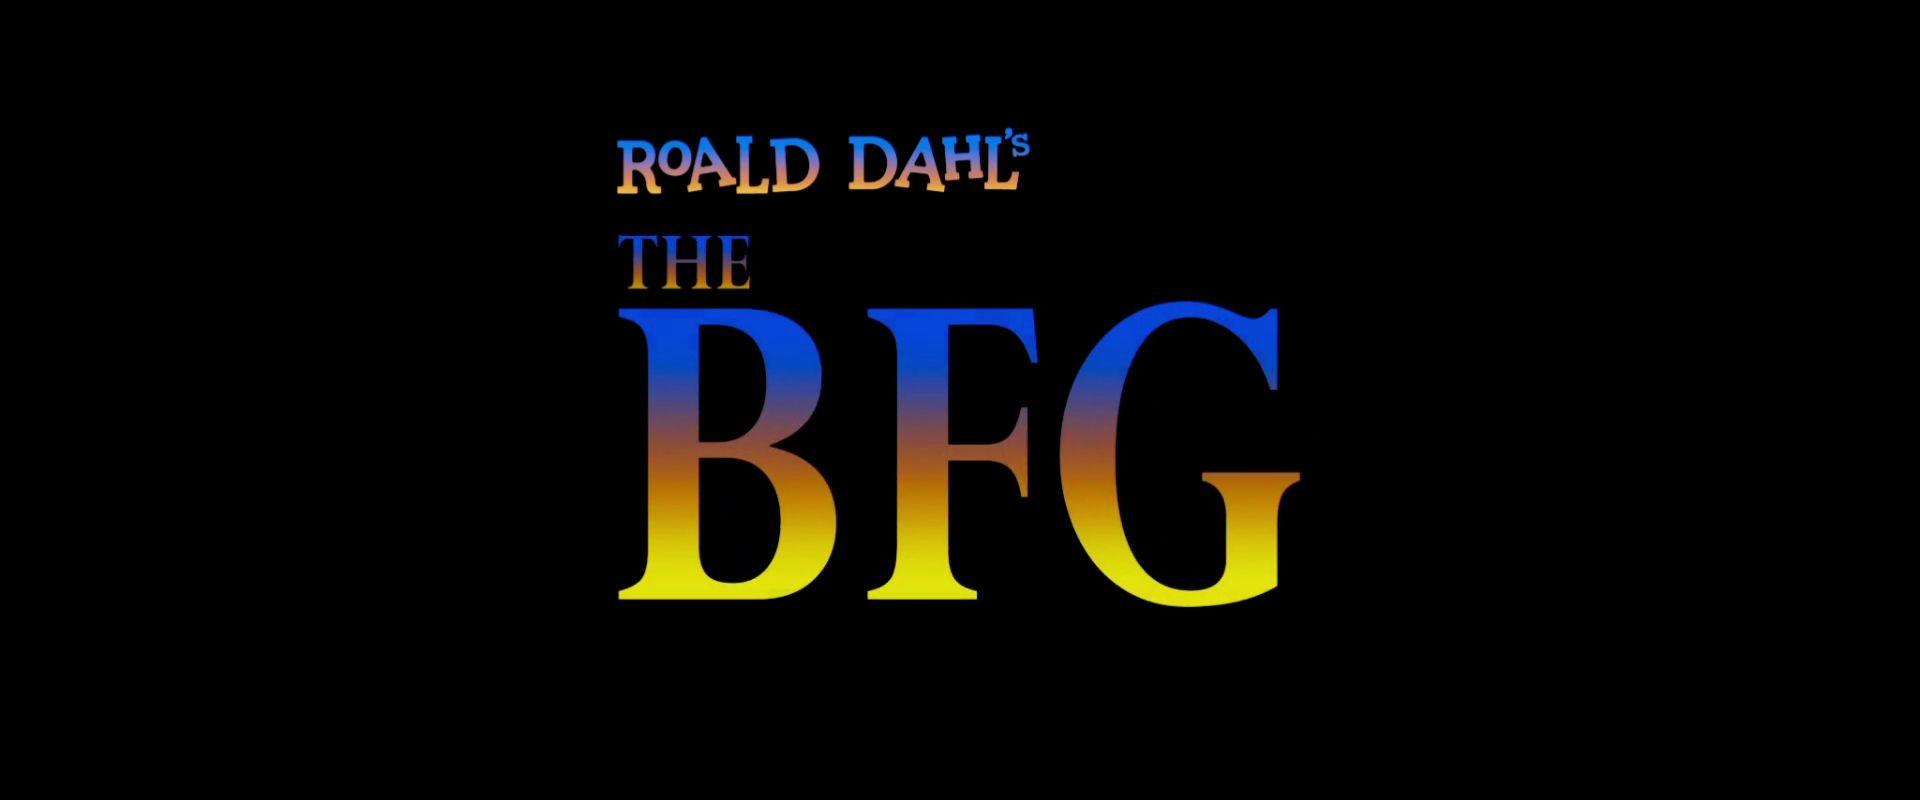 BFG Logo - The BFG (2016). Film and Television